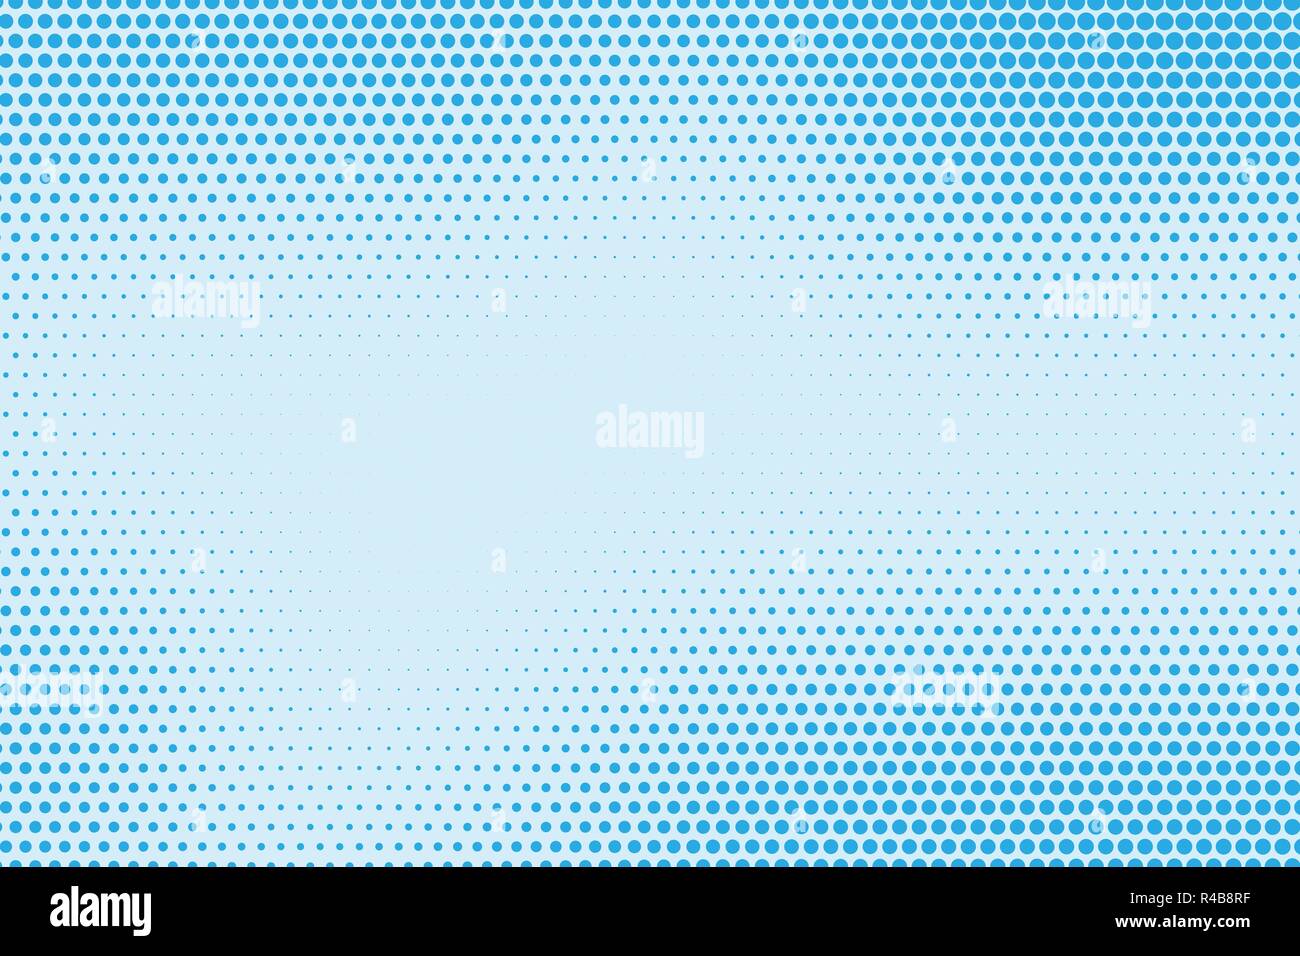 Halftone pattern puntiforme come sfondo. Fumetto pop art style punti blu texture vettoriali per la progettazione grafica e web Illustrazione Vettoriale